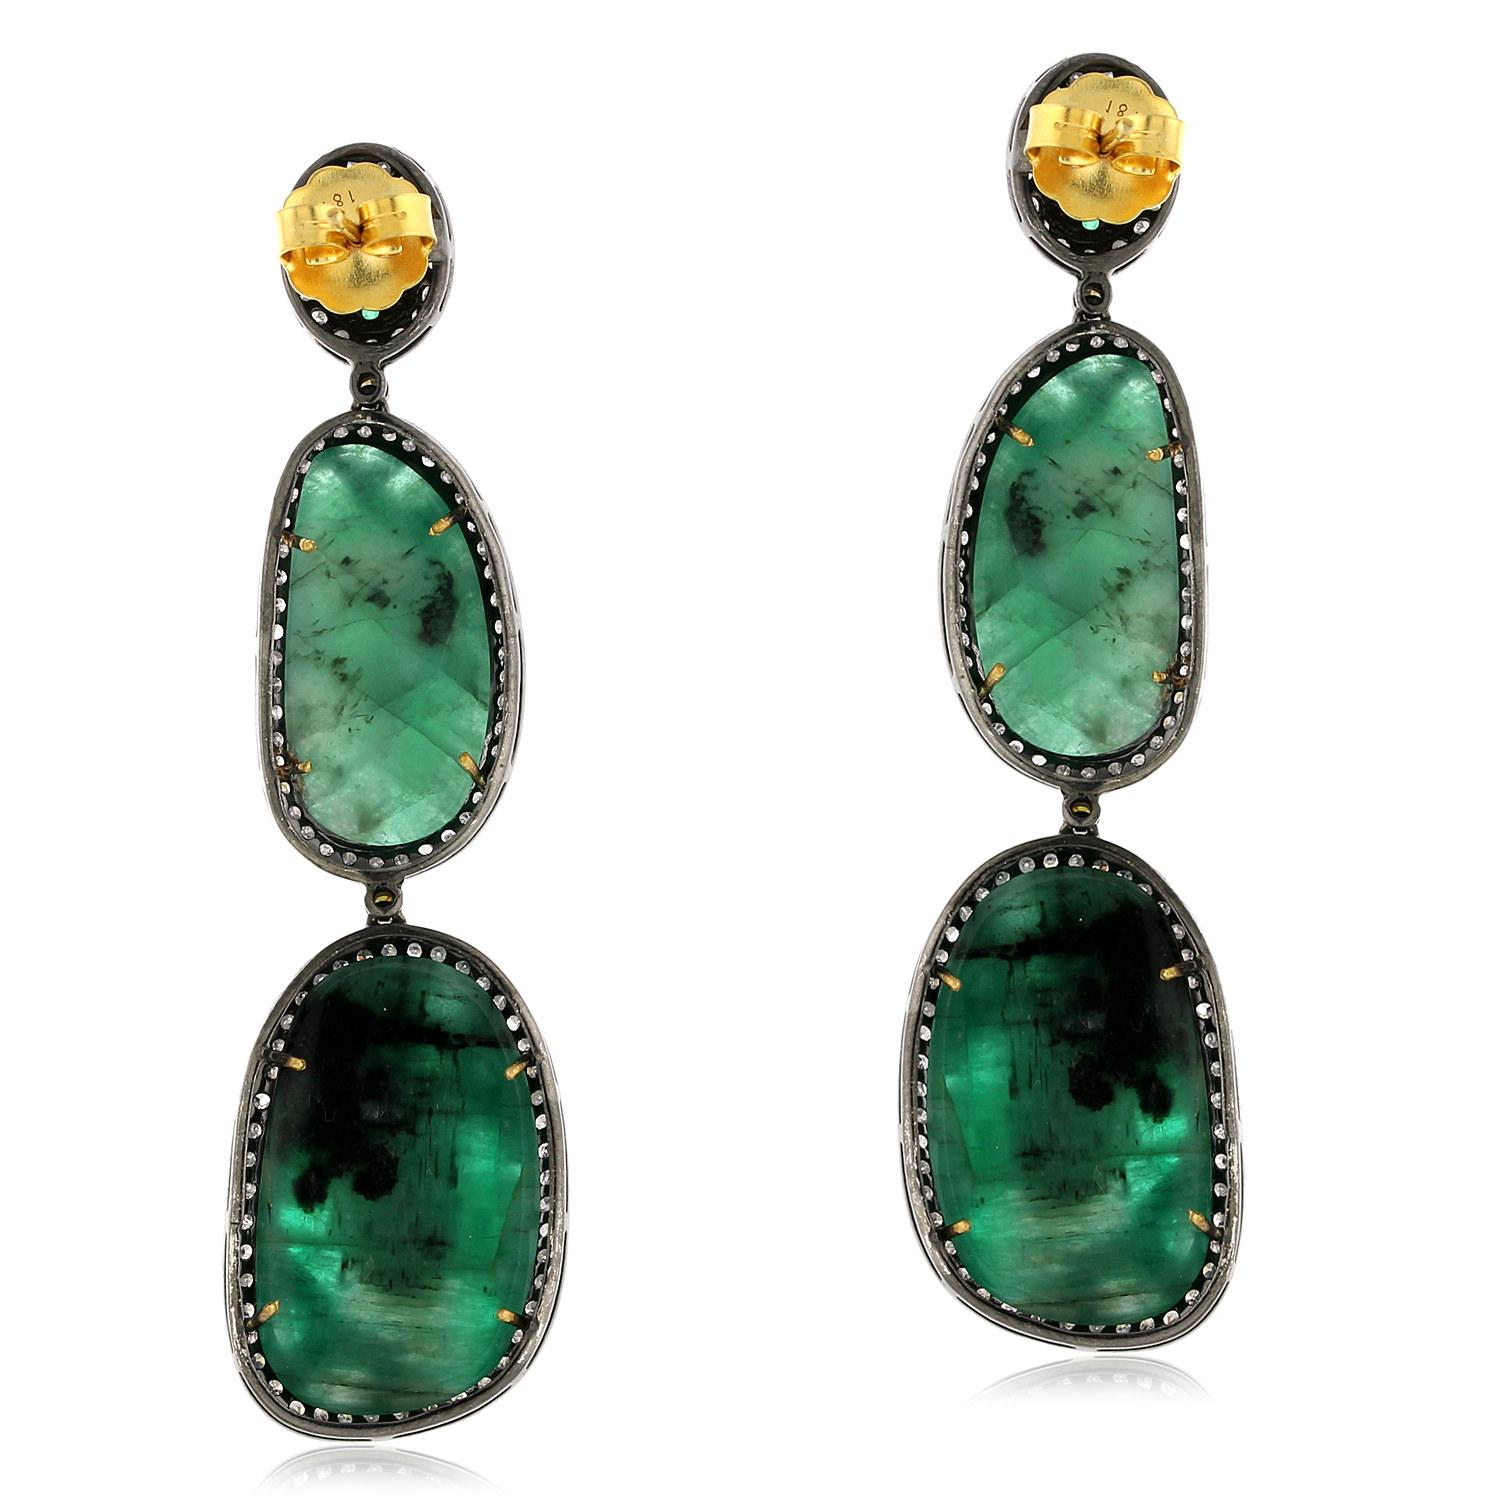 Diese Ohrringe bestehen aus leuchtenden Smaragden, die in einer einzigartigen Nugget- und Opalform gefasst und von funkelnden Pflasterdiamanten umgeben sind. Diese aus 18 Karat Gold und Silber gefertigten Ohrringe sind luxuriös und langlebig